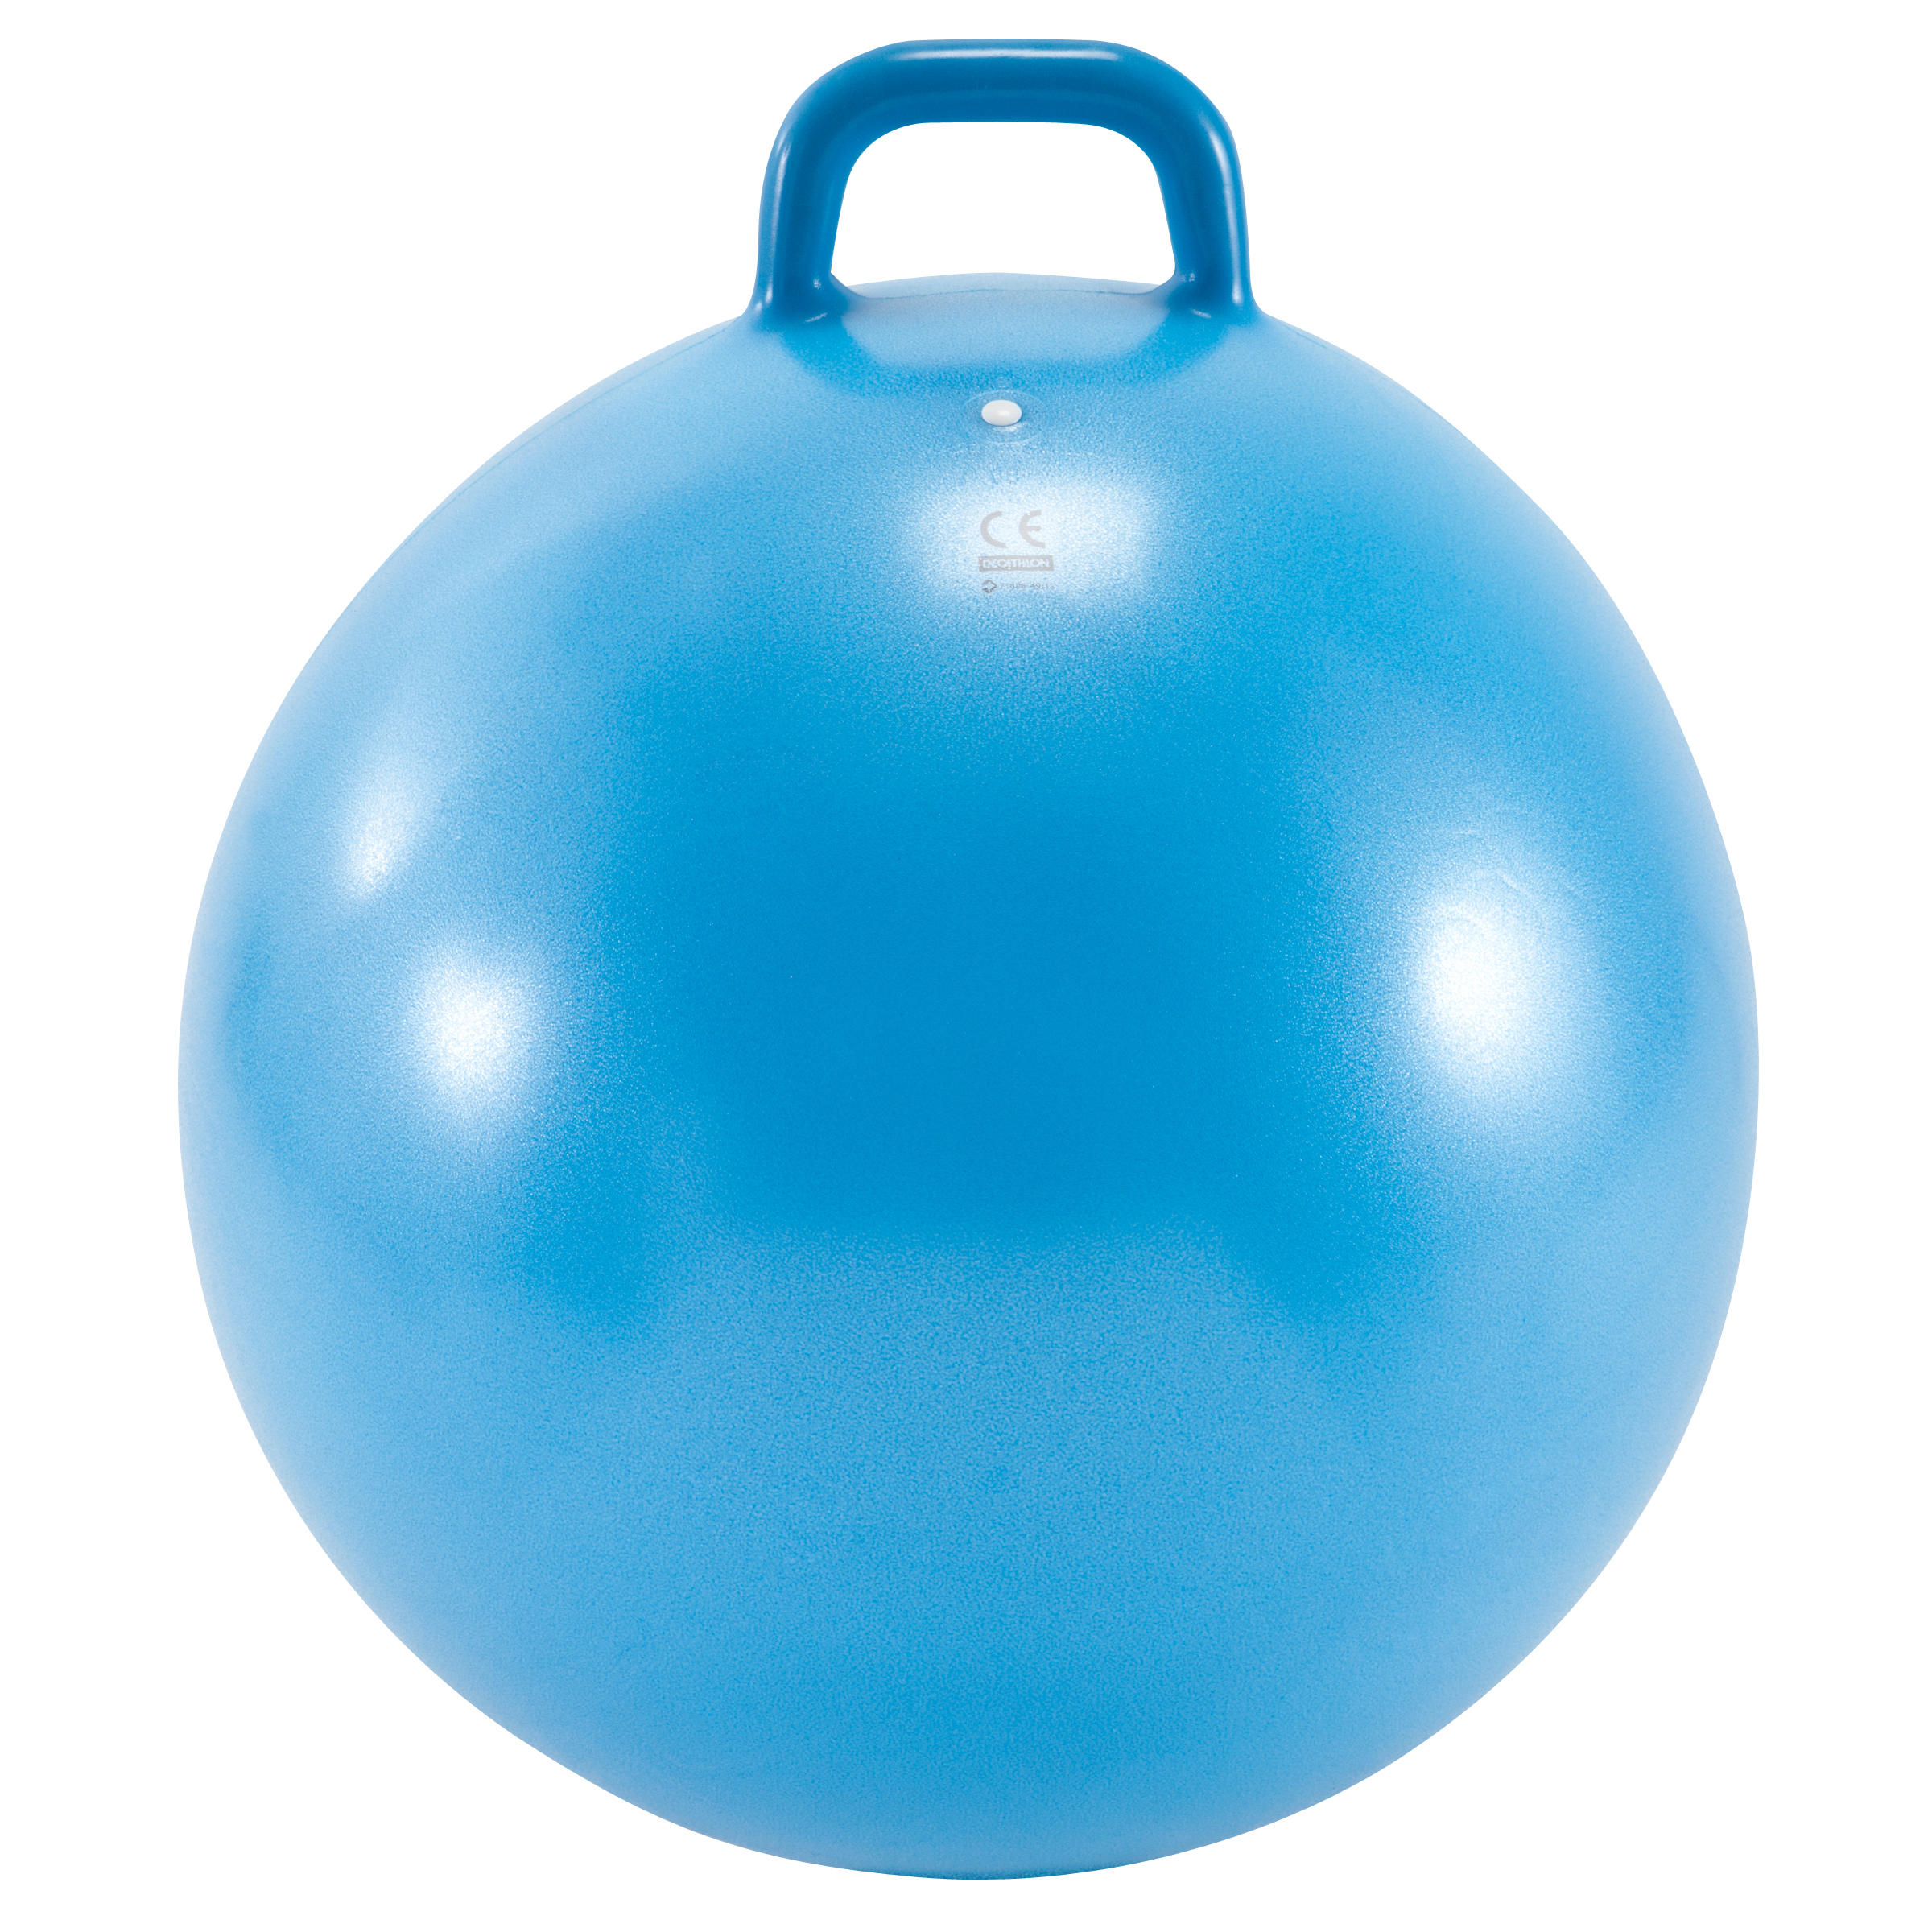 Ballon sauteur, jusqu'à quel âge mon enfant peut l'utiliser